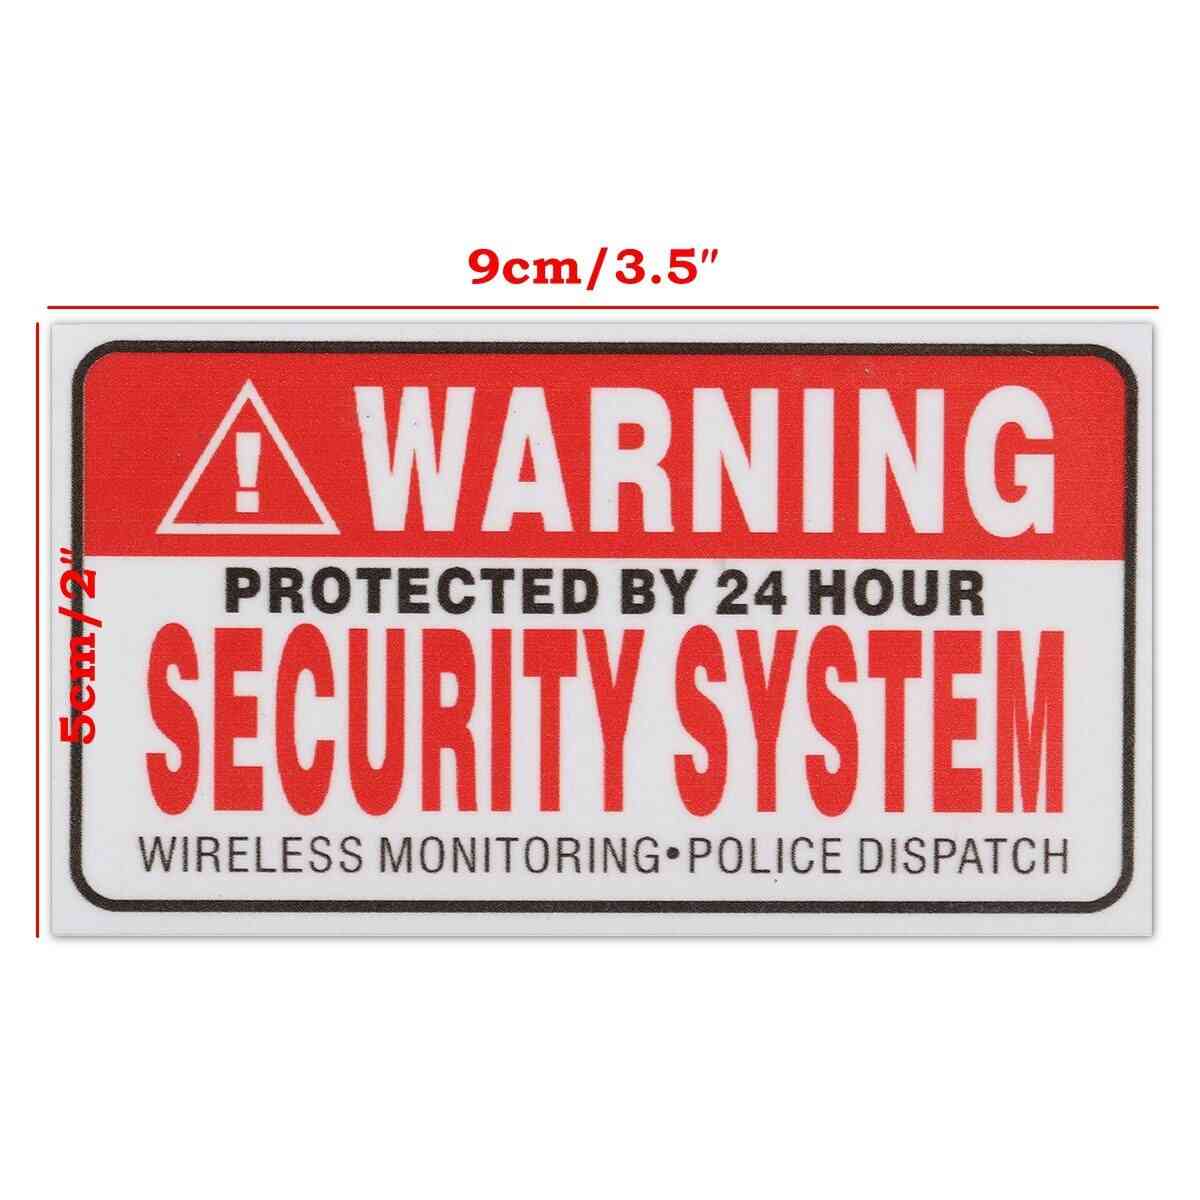 5x protegido por adesivos autoadesivos do sistema de segurança 24 horas